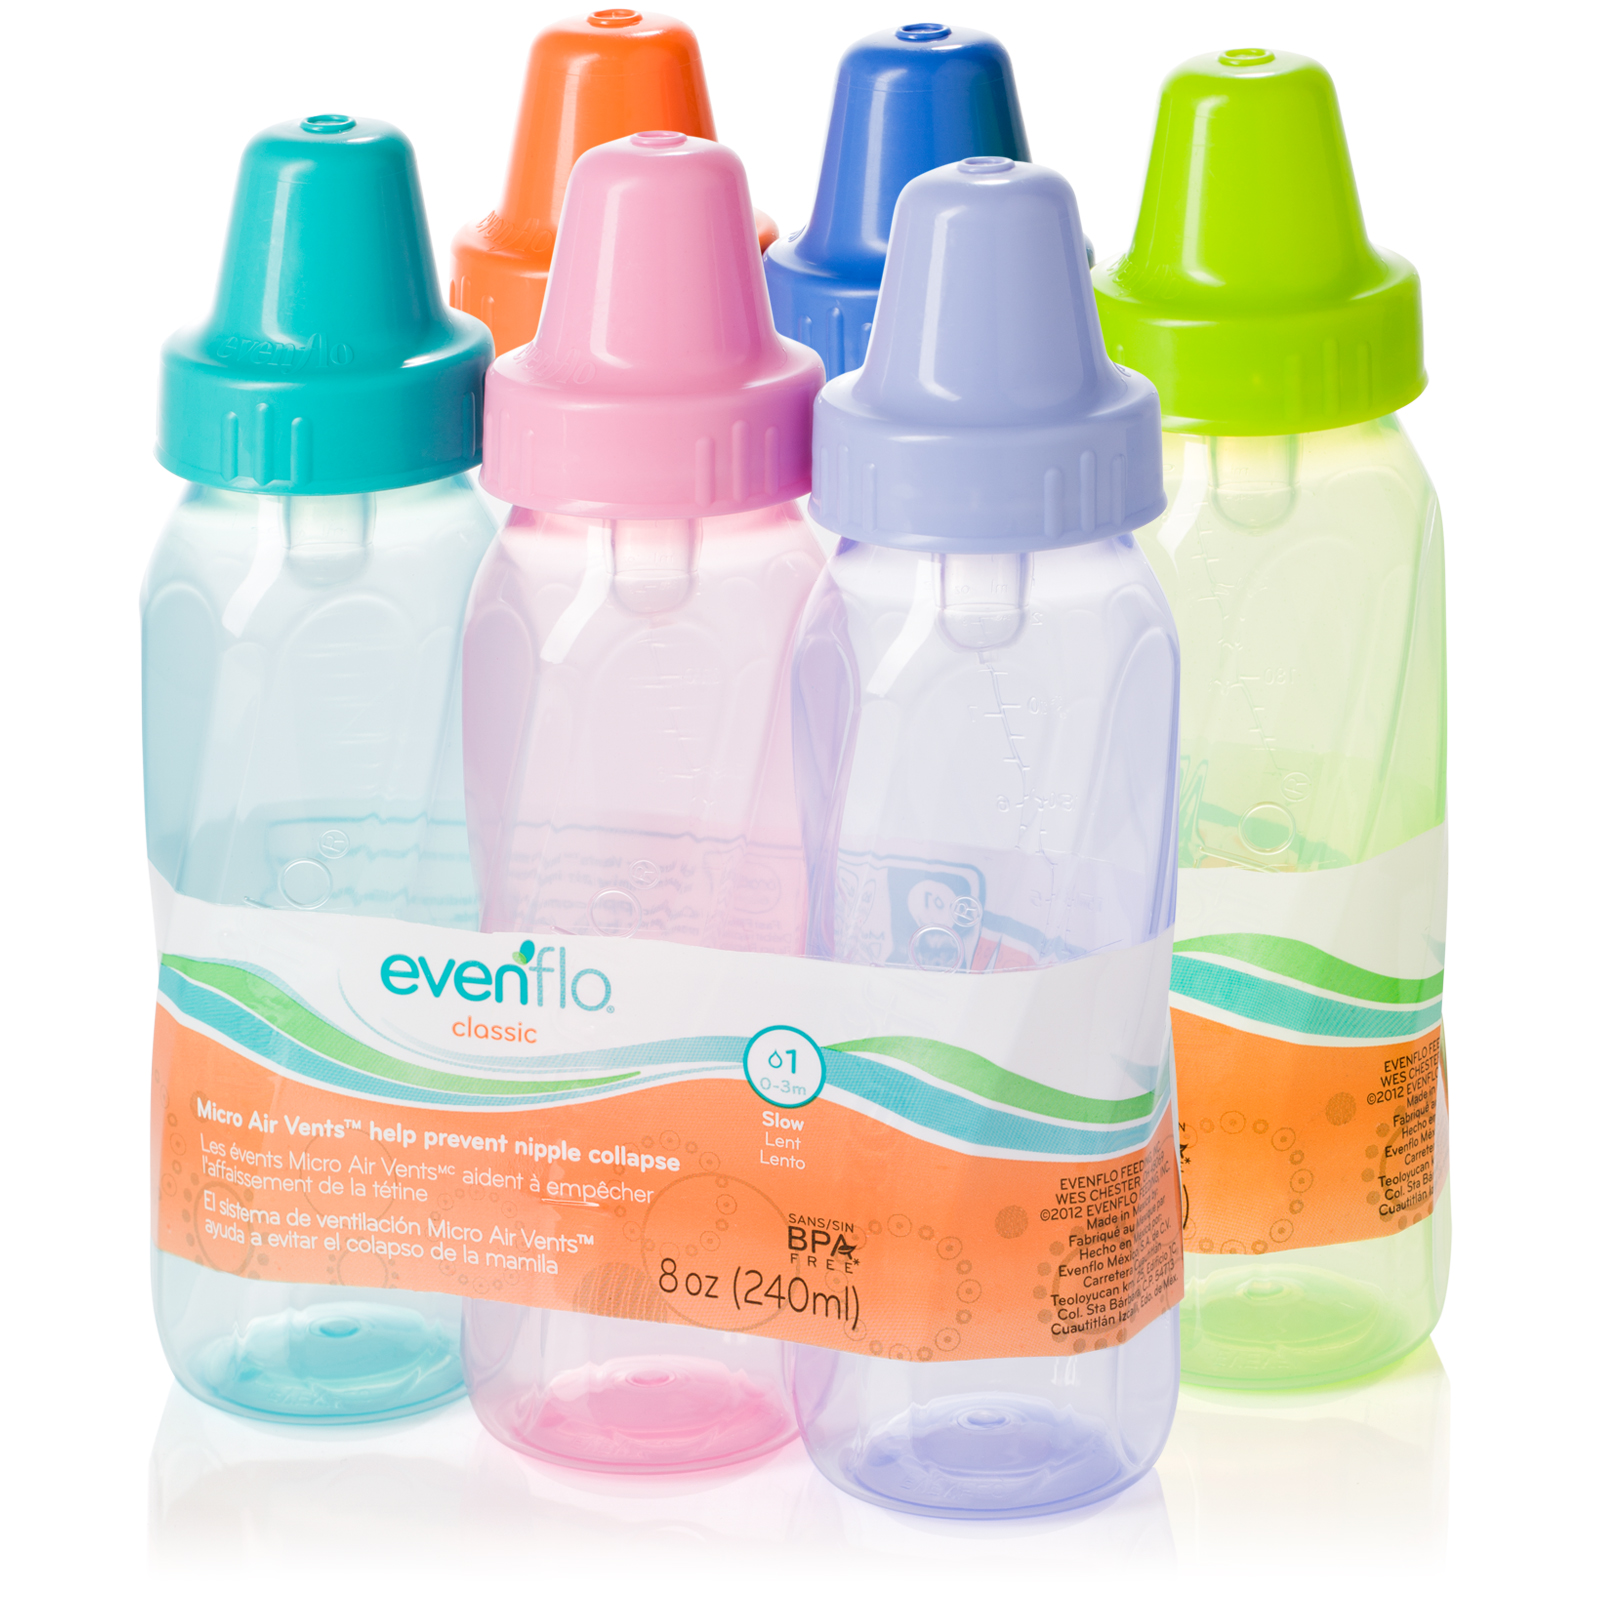 evenflo bottles